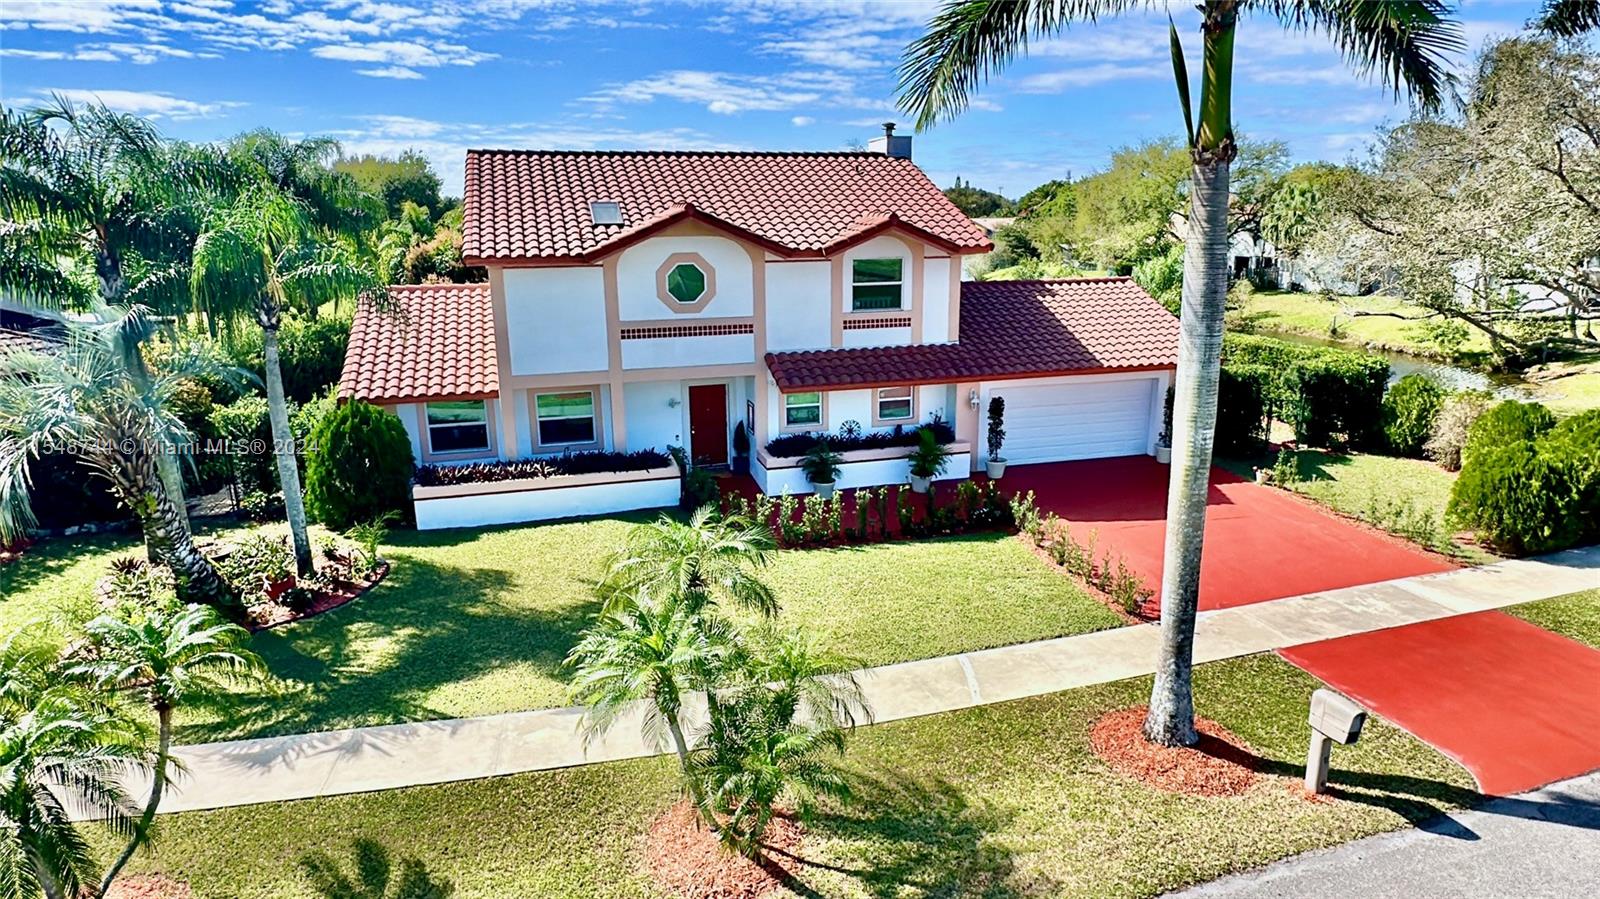 House for Sale in Davie, FL